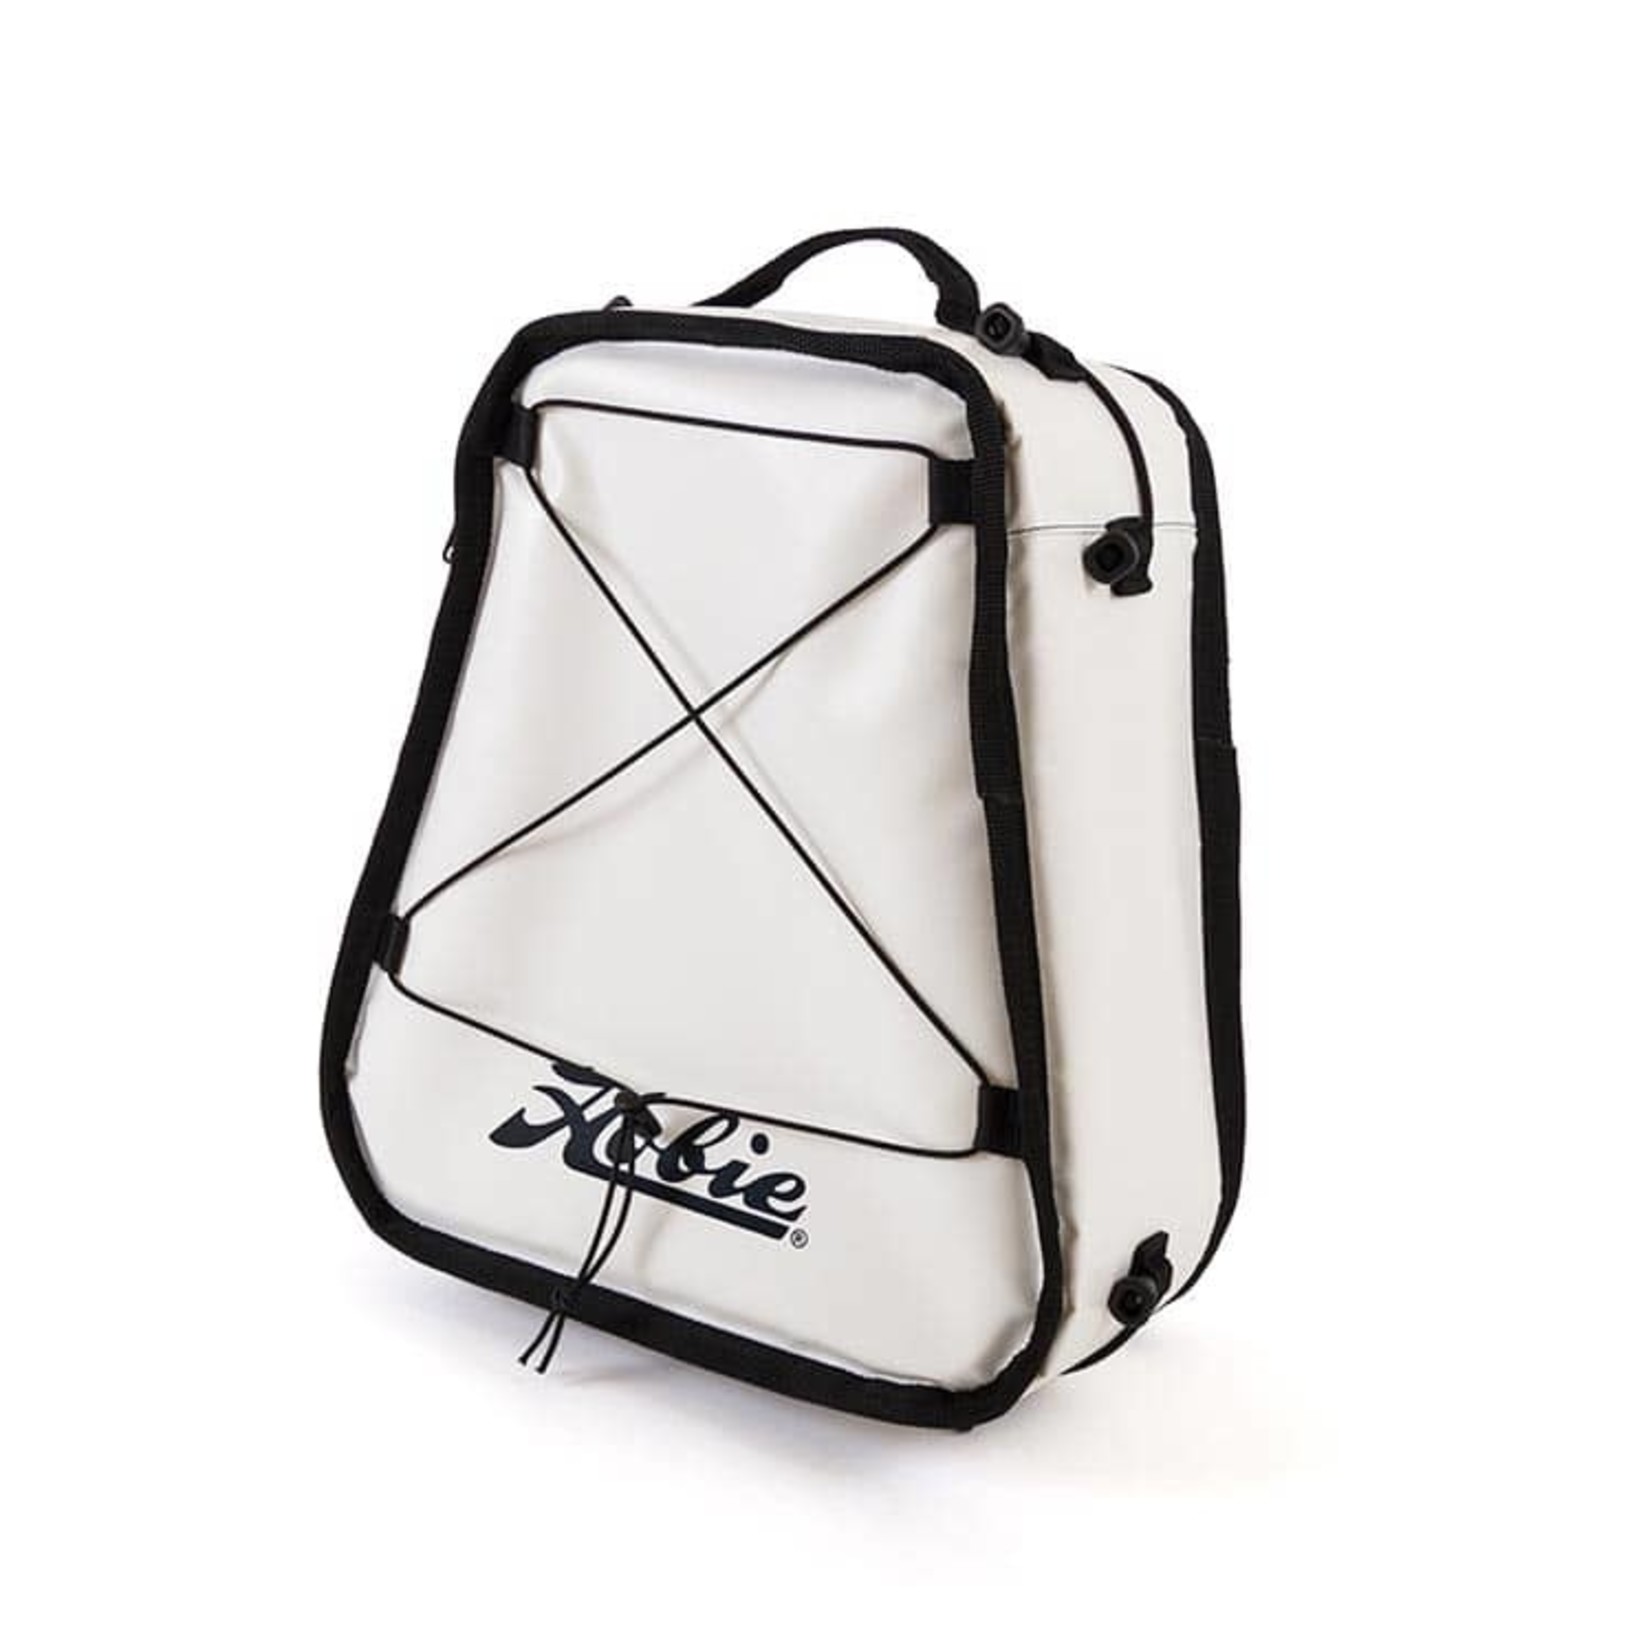 Hobie Hobie Soft Cooler/Fish Bag